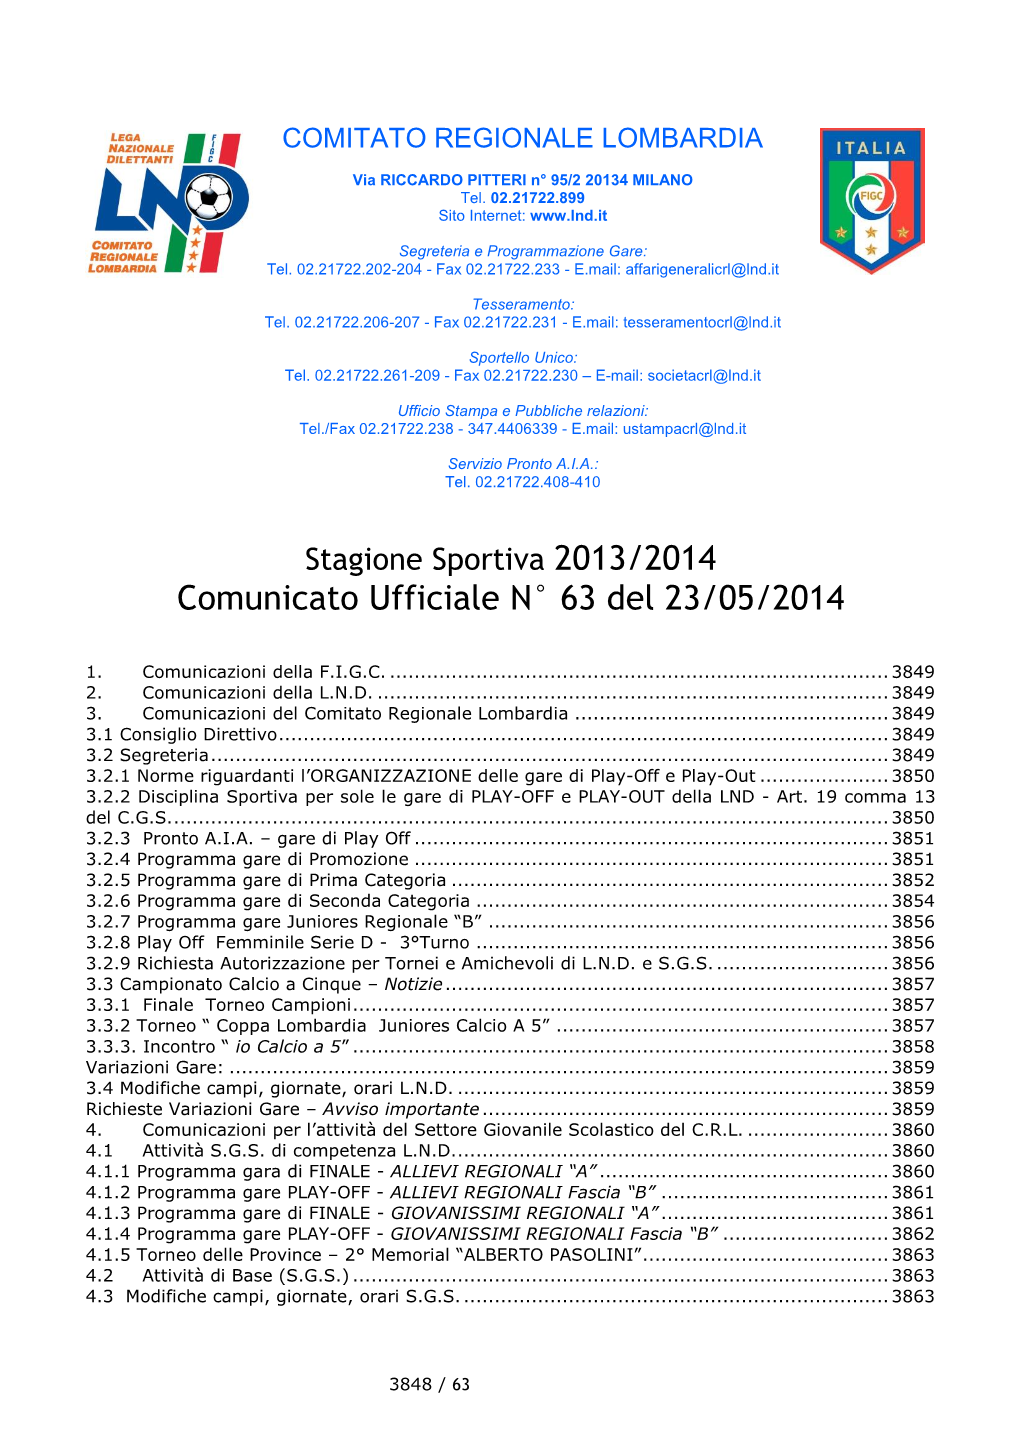 Comunicato Regionale Lombardia N. 63 Del 23 Maggio 2014